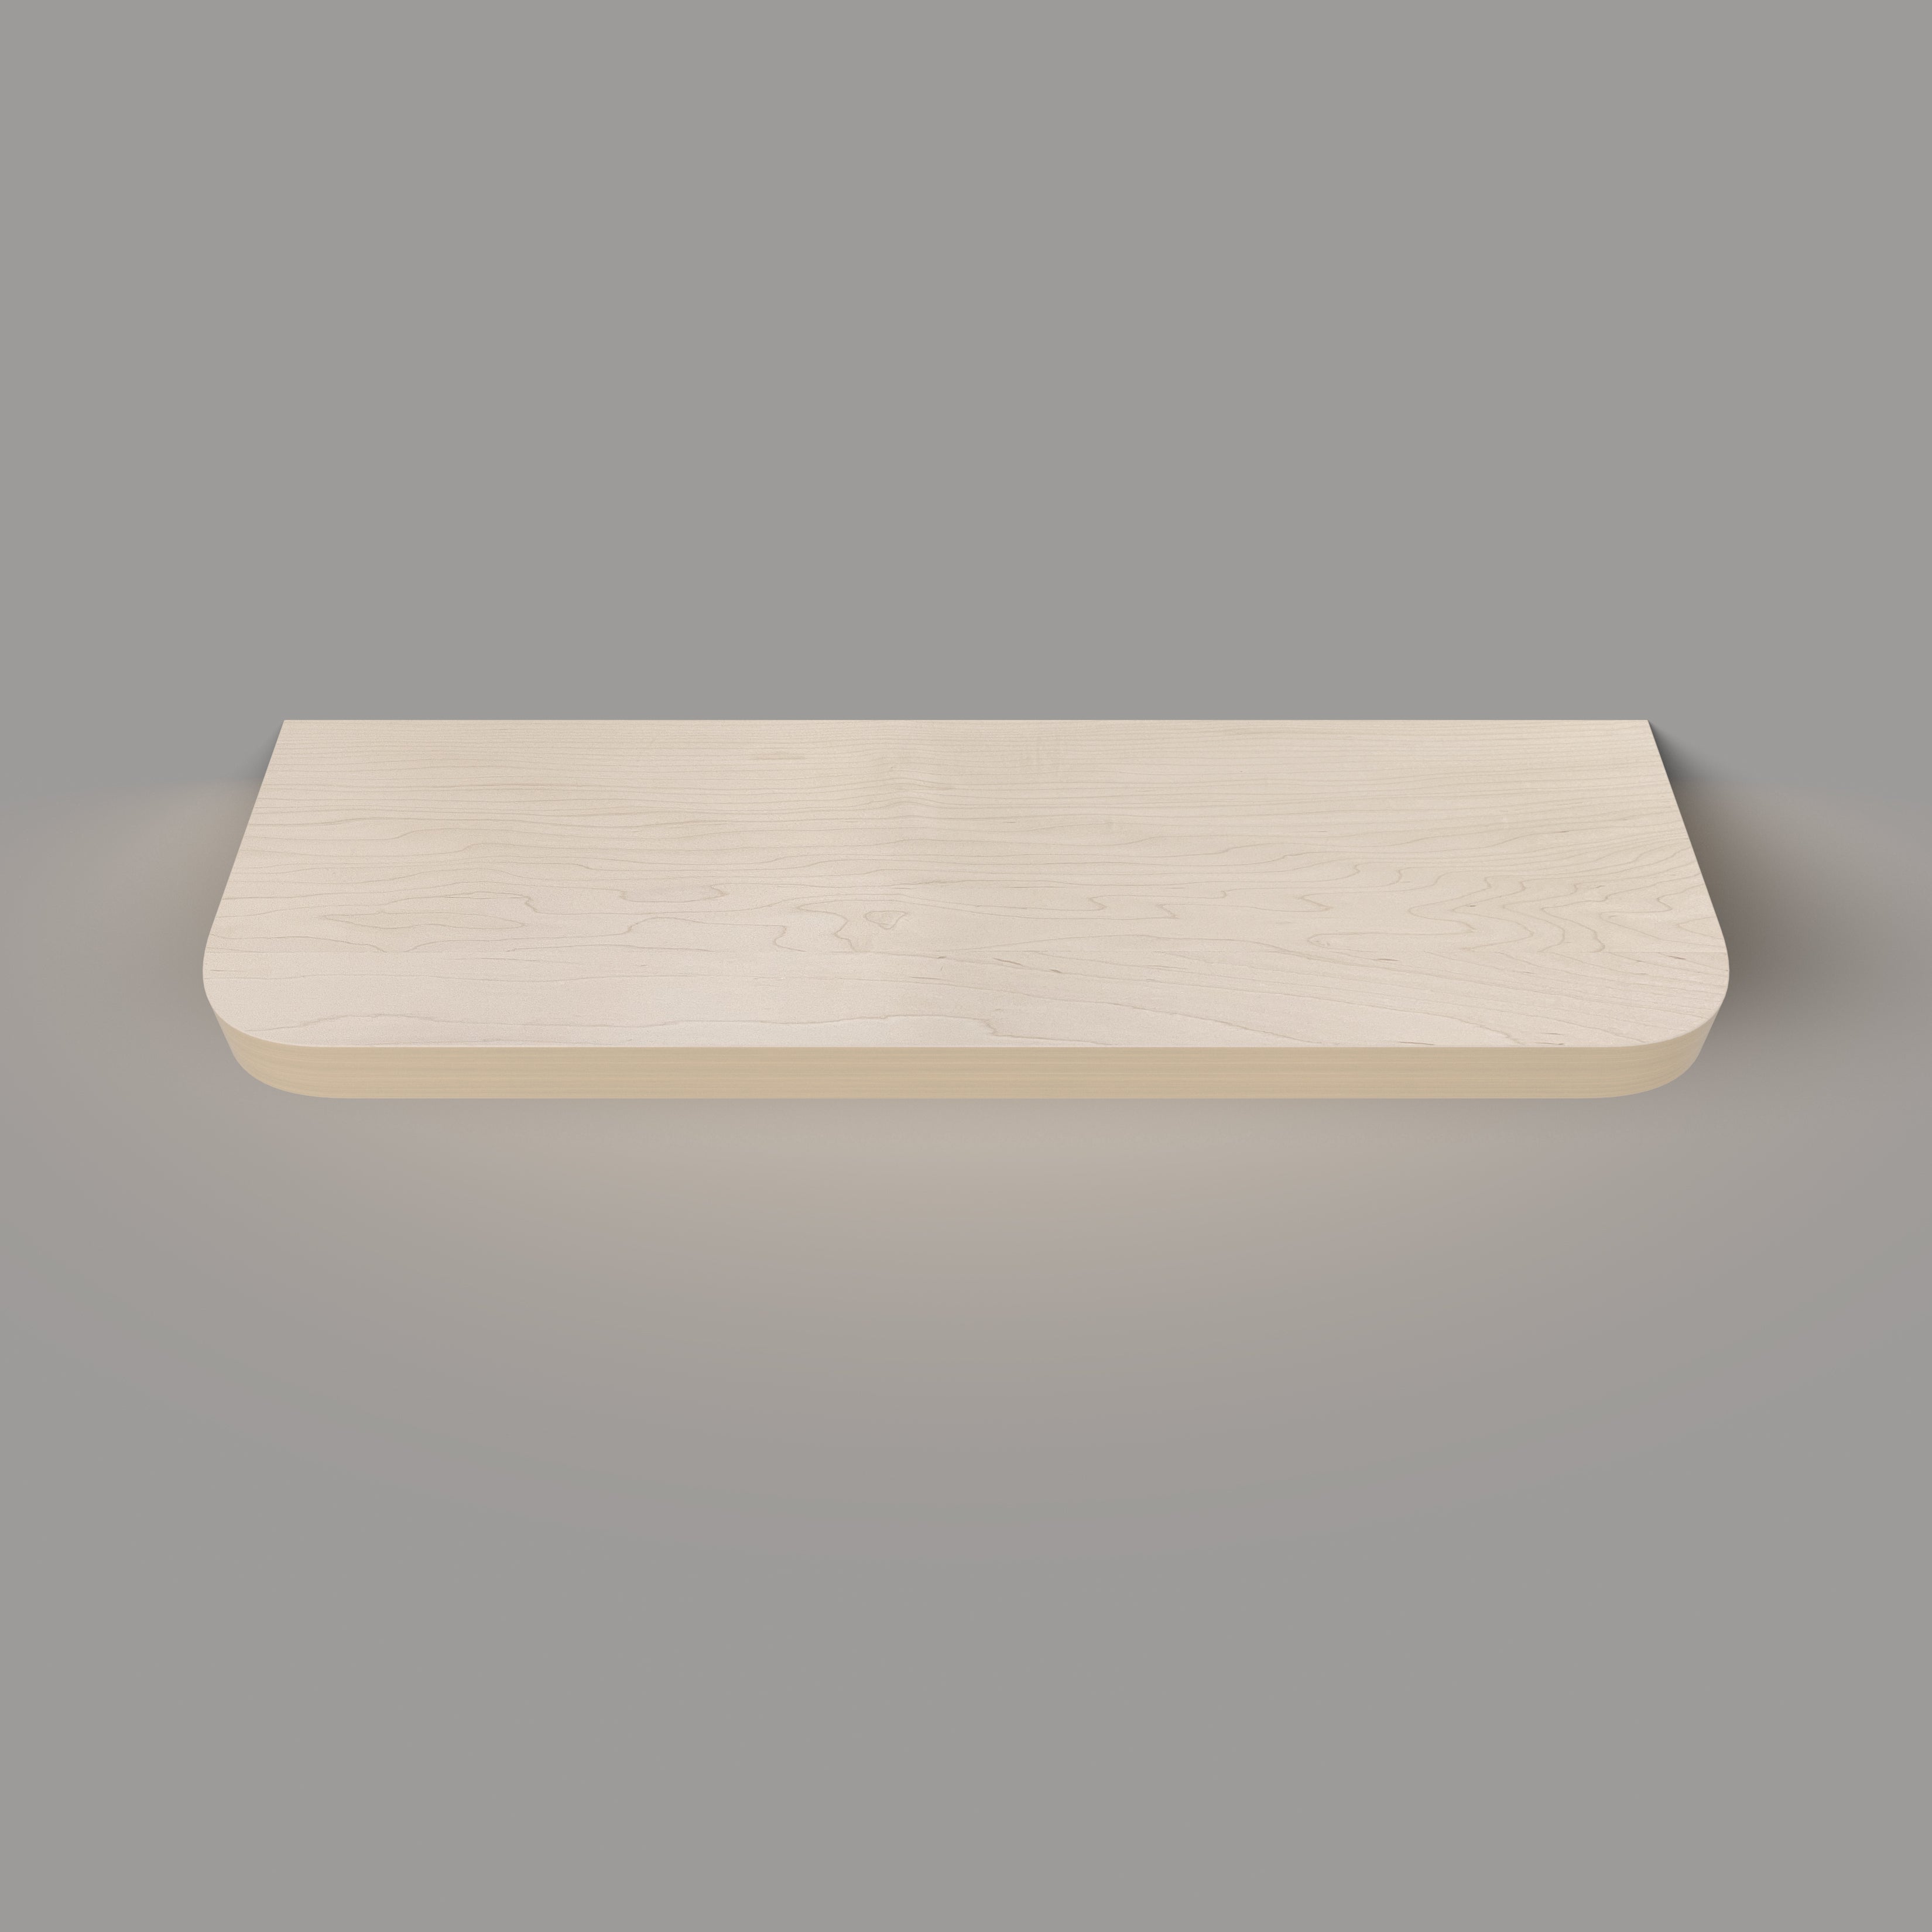 Maple Radius LED Lighted Floating Shelf - Hardwired